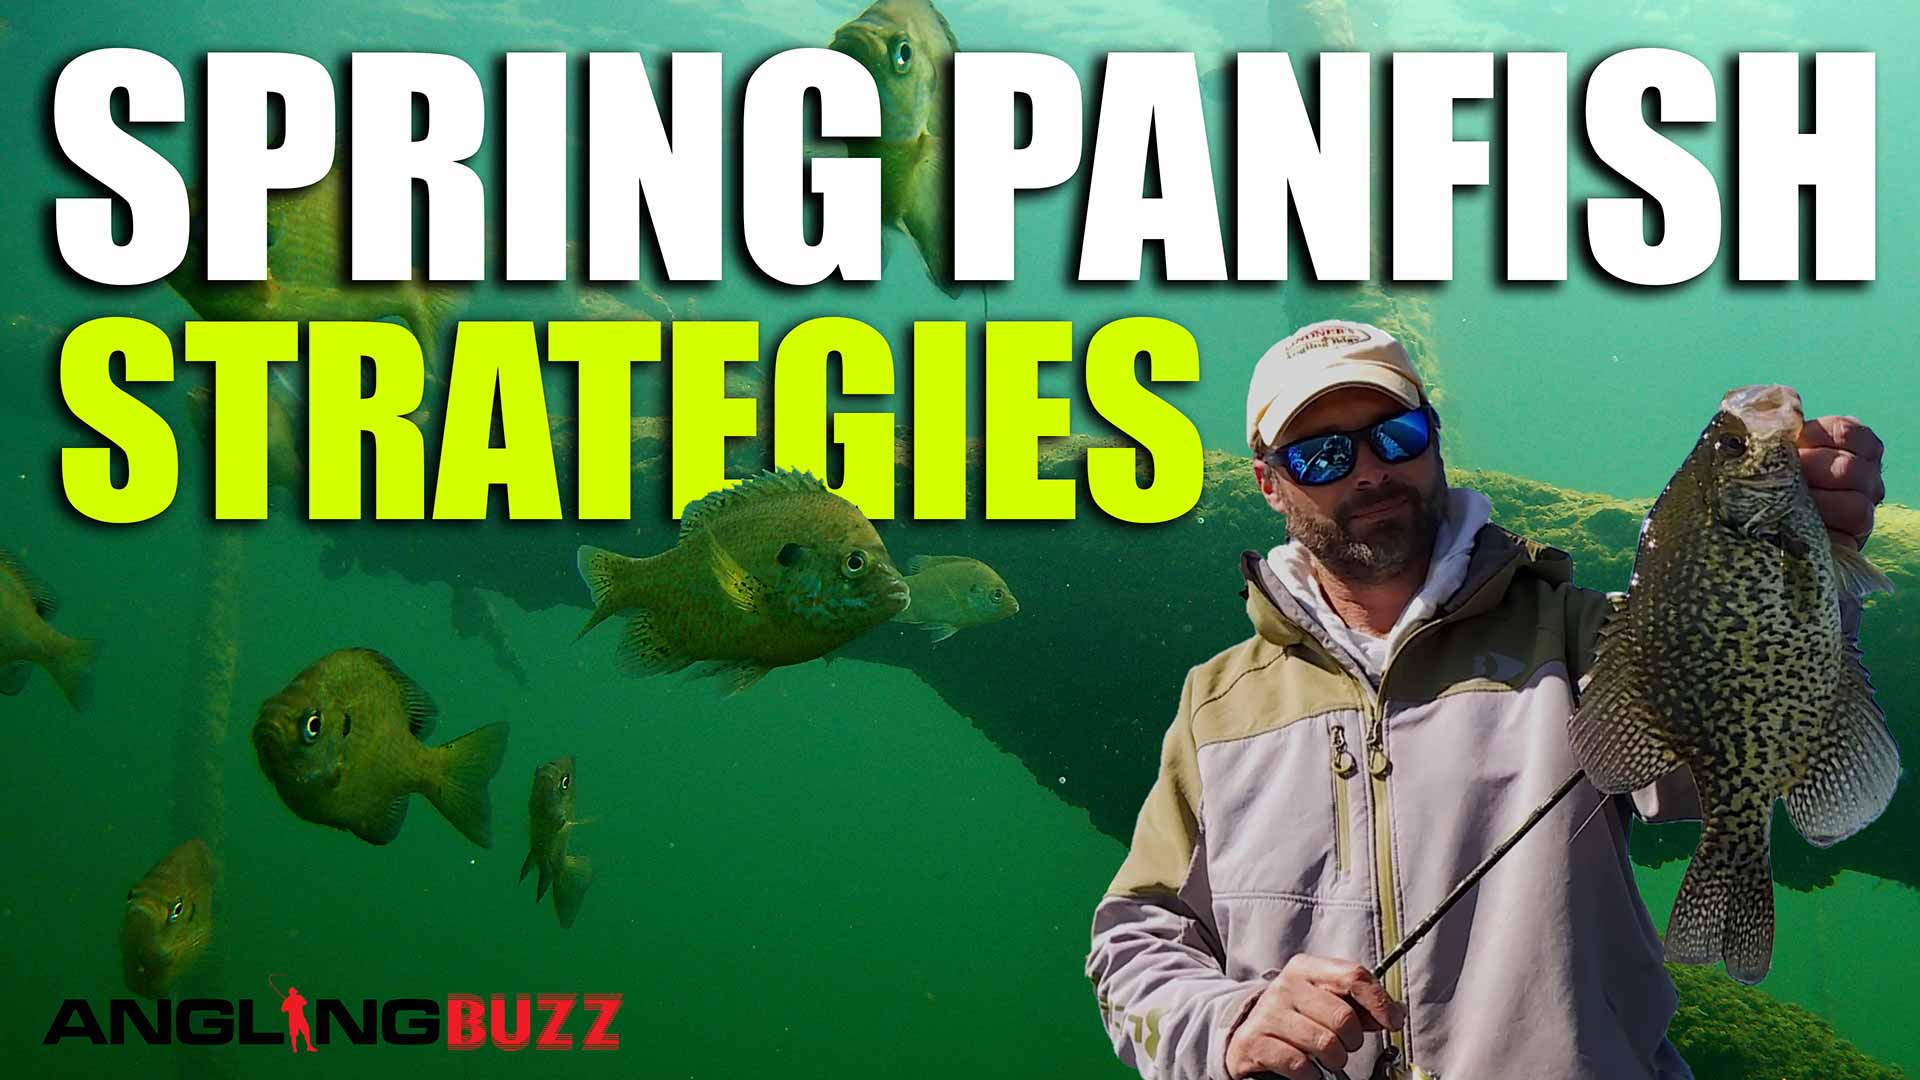 spring panfish